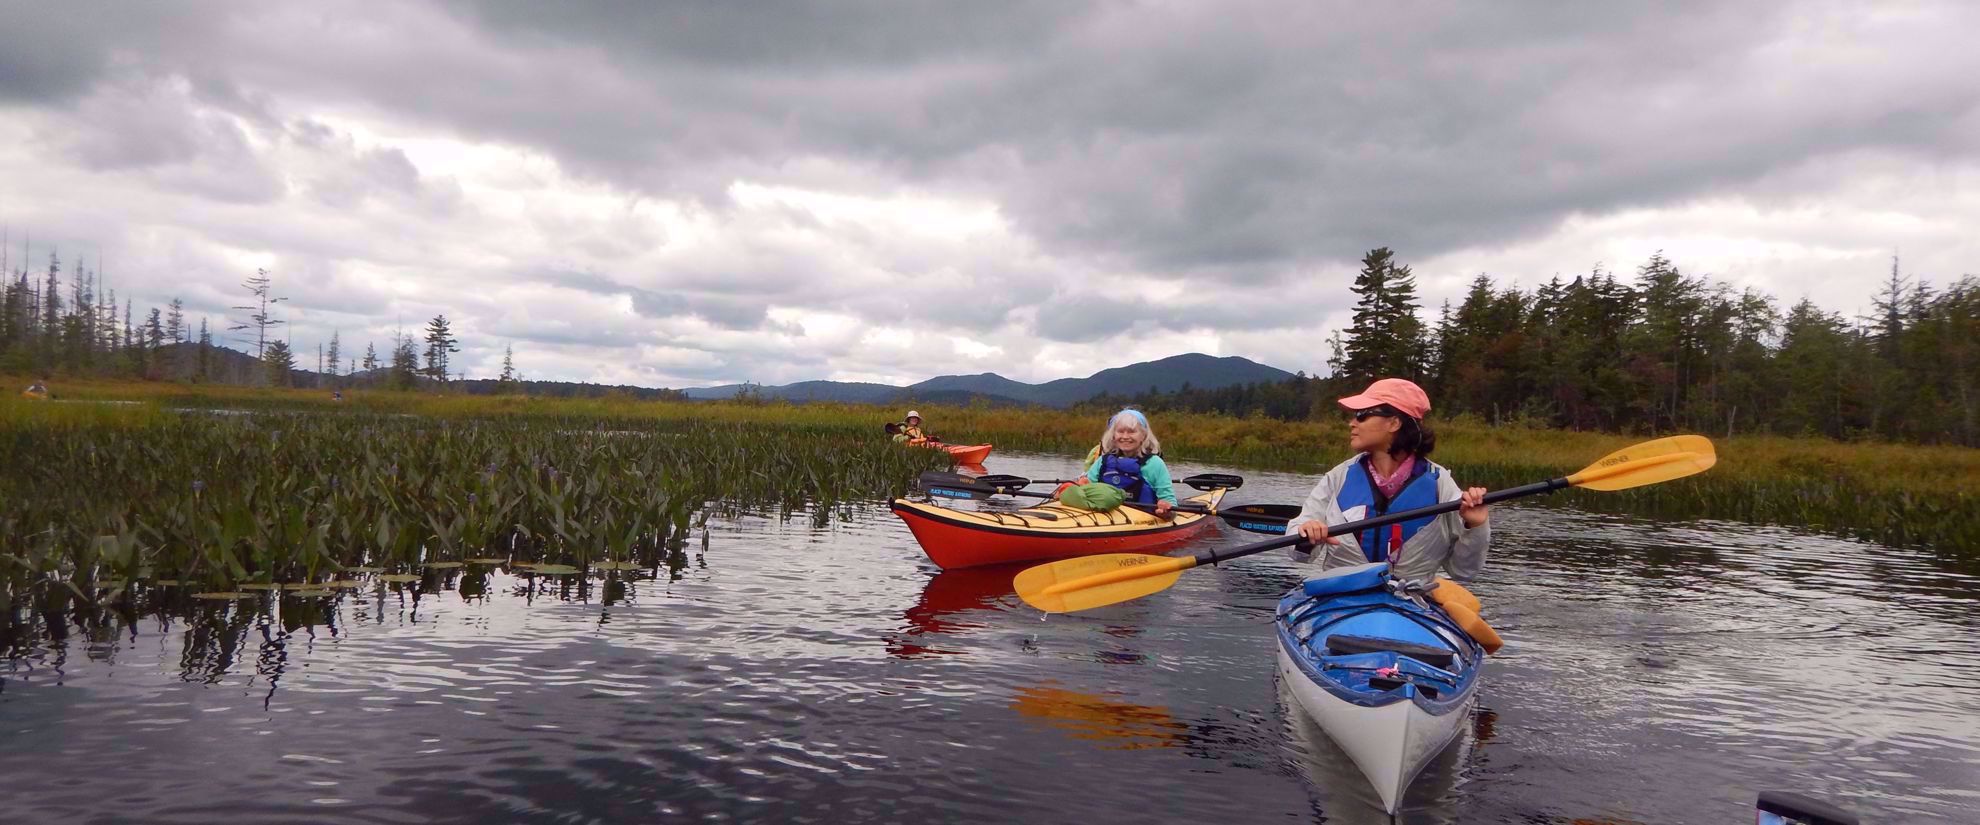 Kayaking the Adirondacks